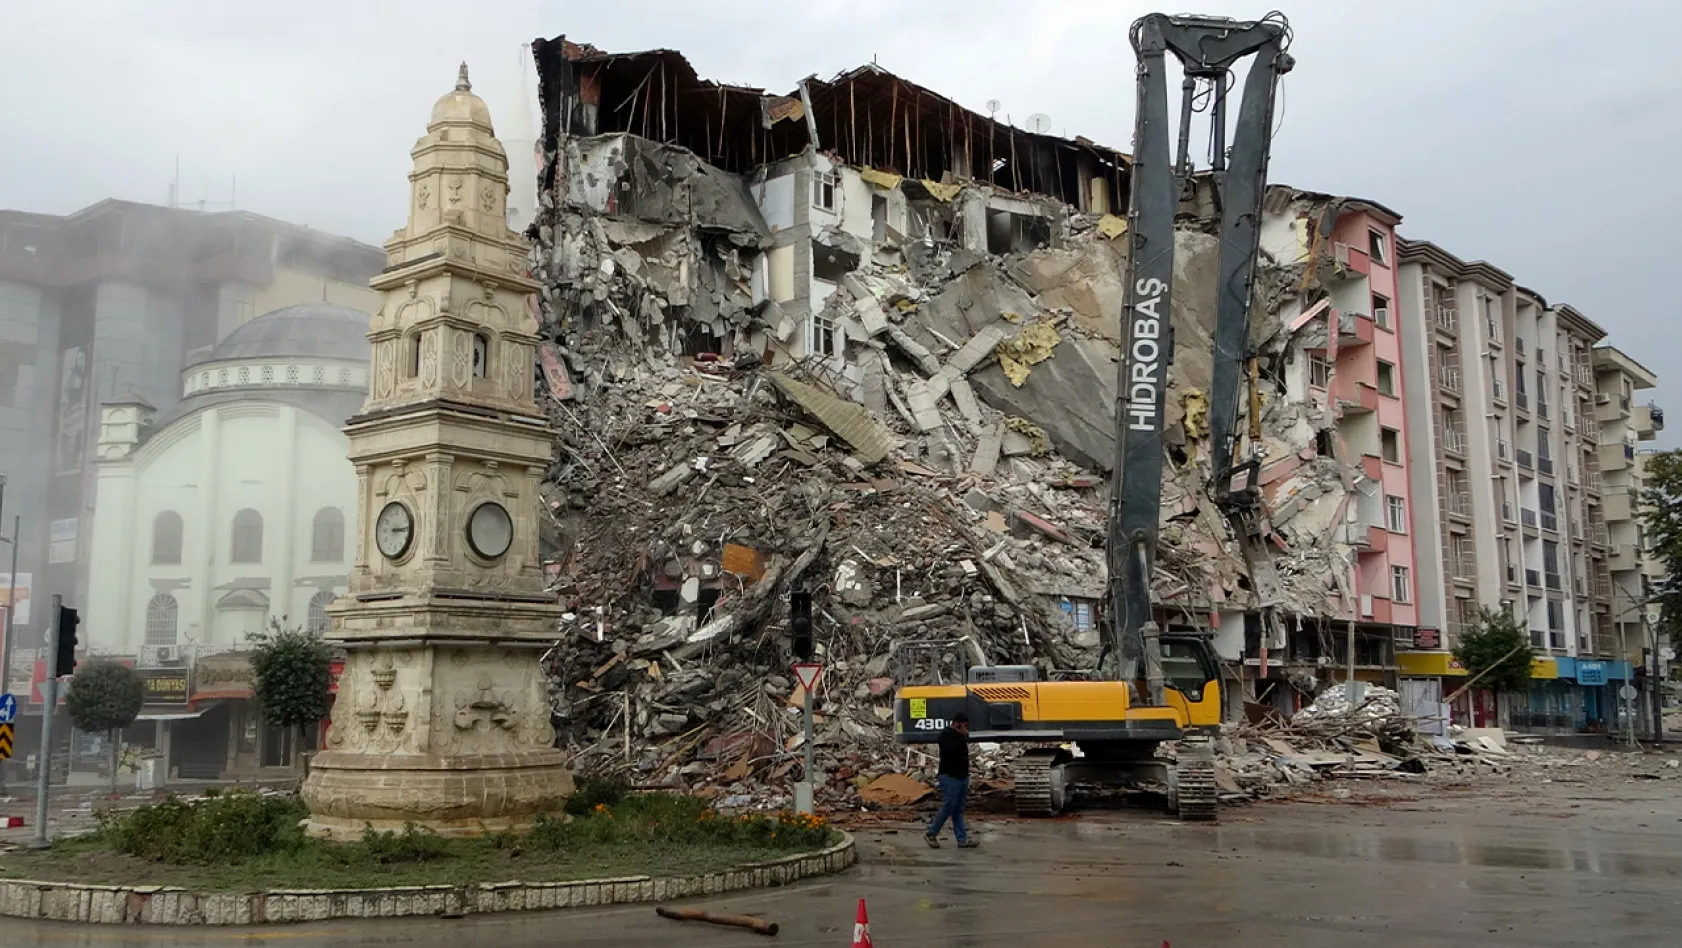 Malatya'da ağır hasarlı binaların yıkımına hız verildi